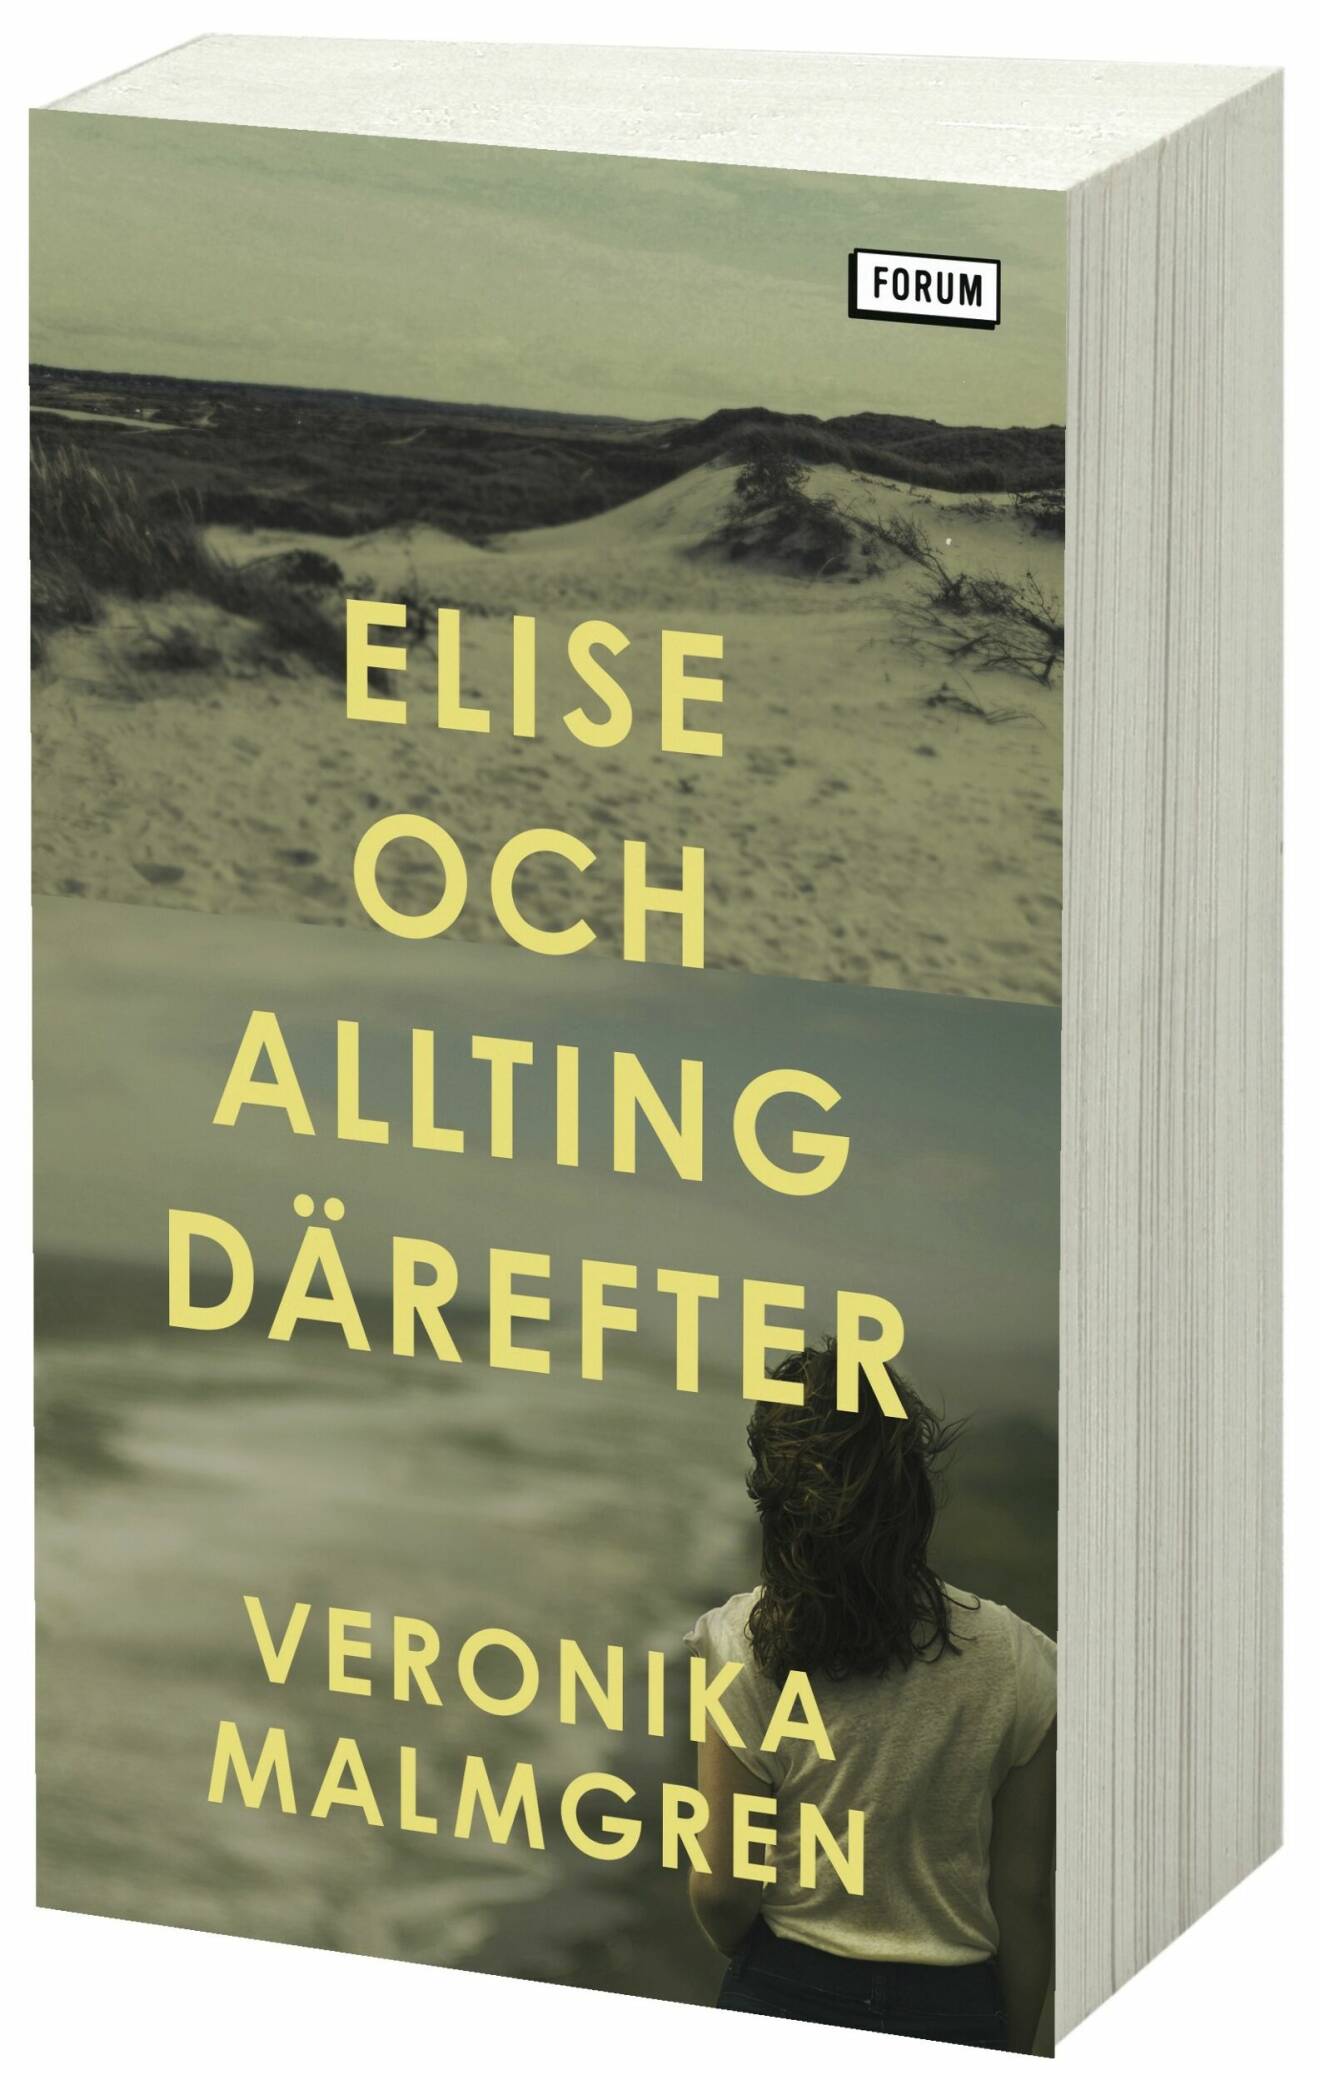 Elise och allting därefter av Veronika Malmgren.